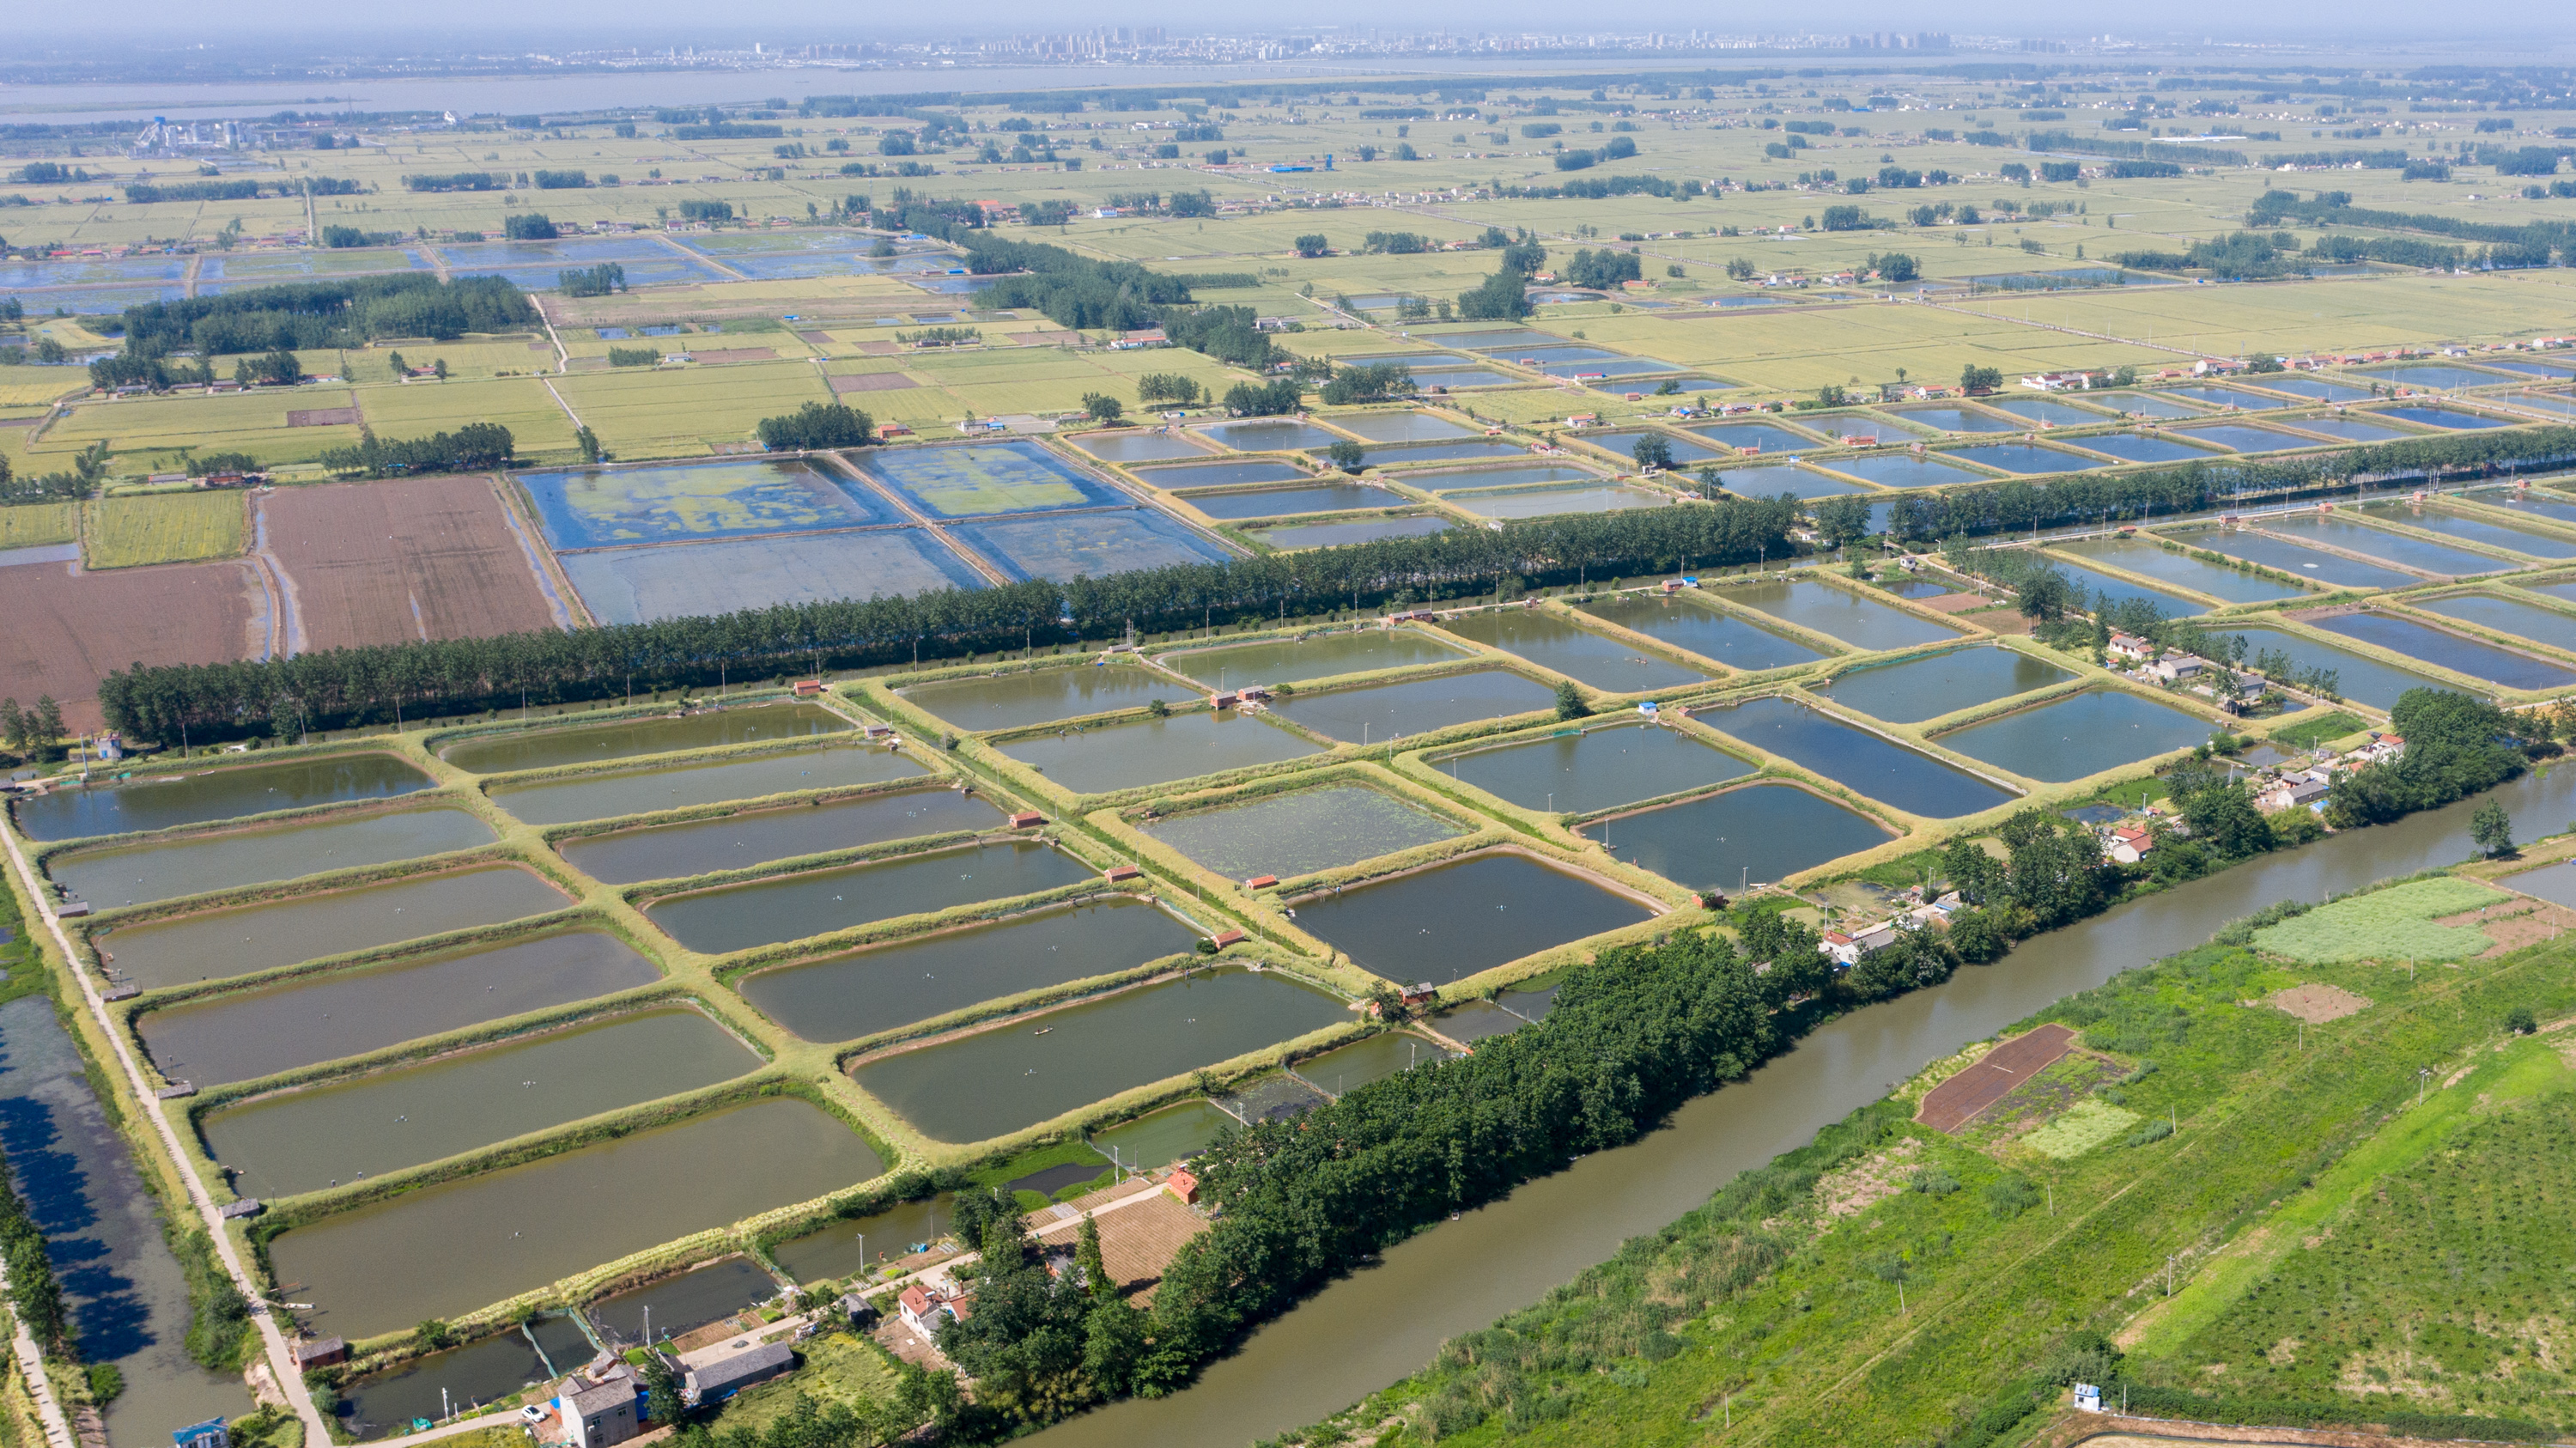 这是5月12日拍摄的江苏省金湖县水产养殖基地(无人机照片)